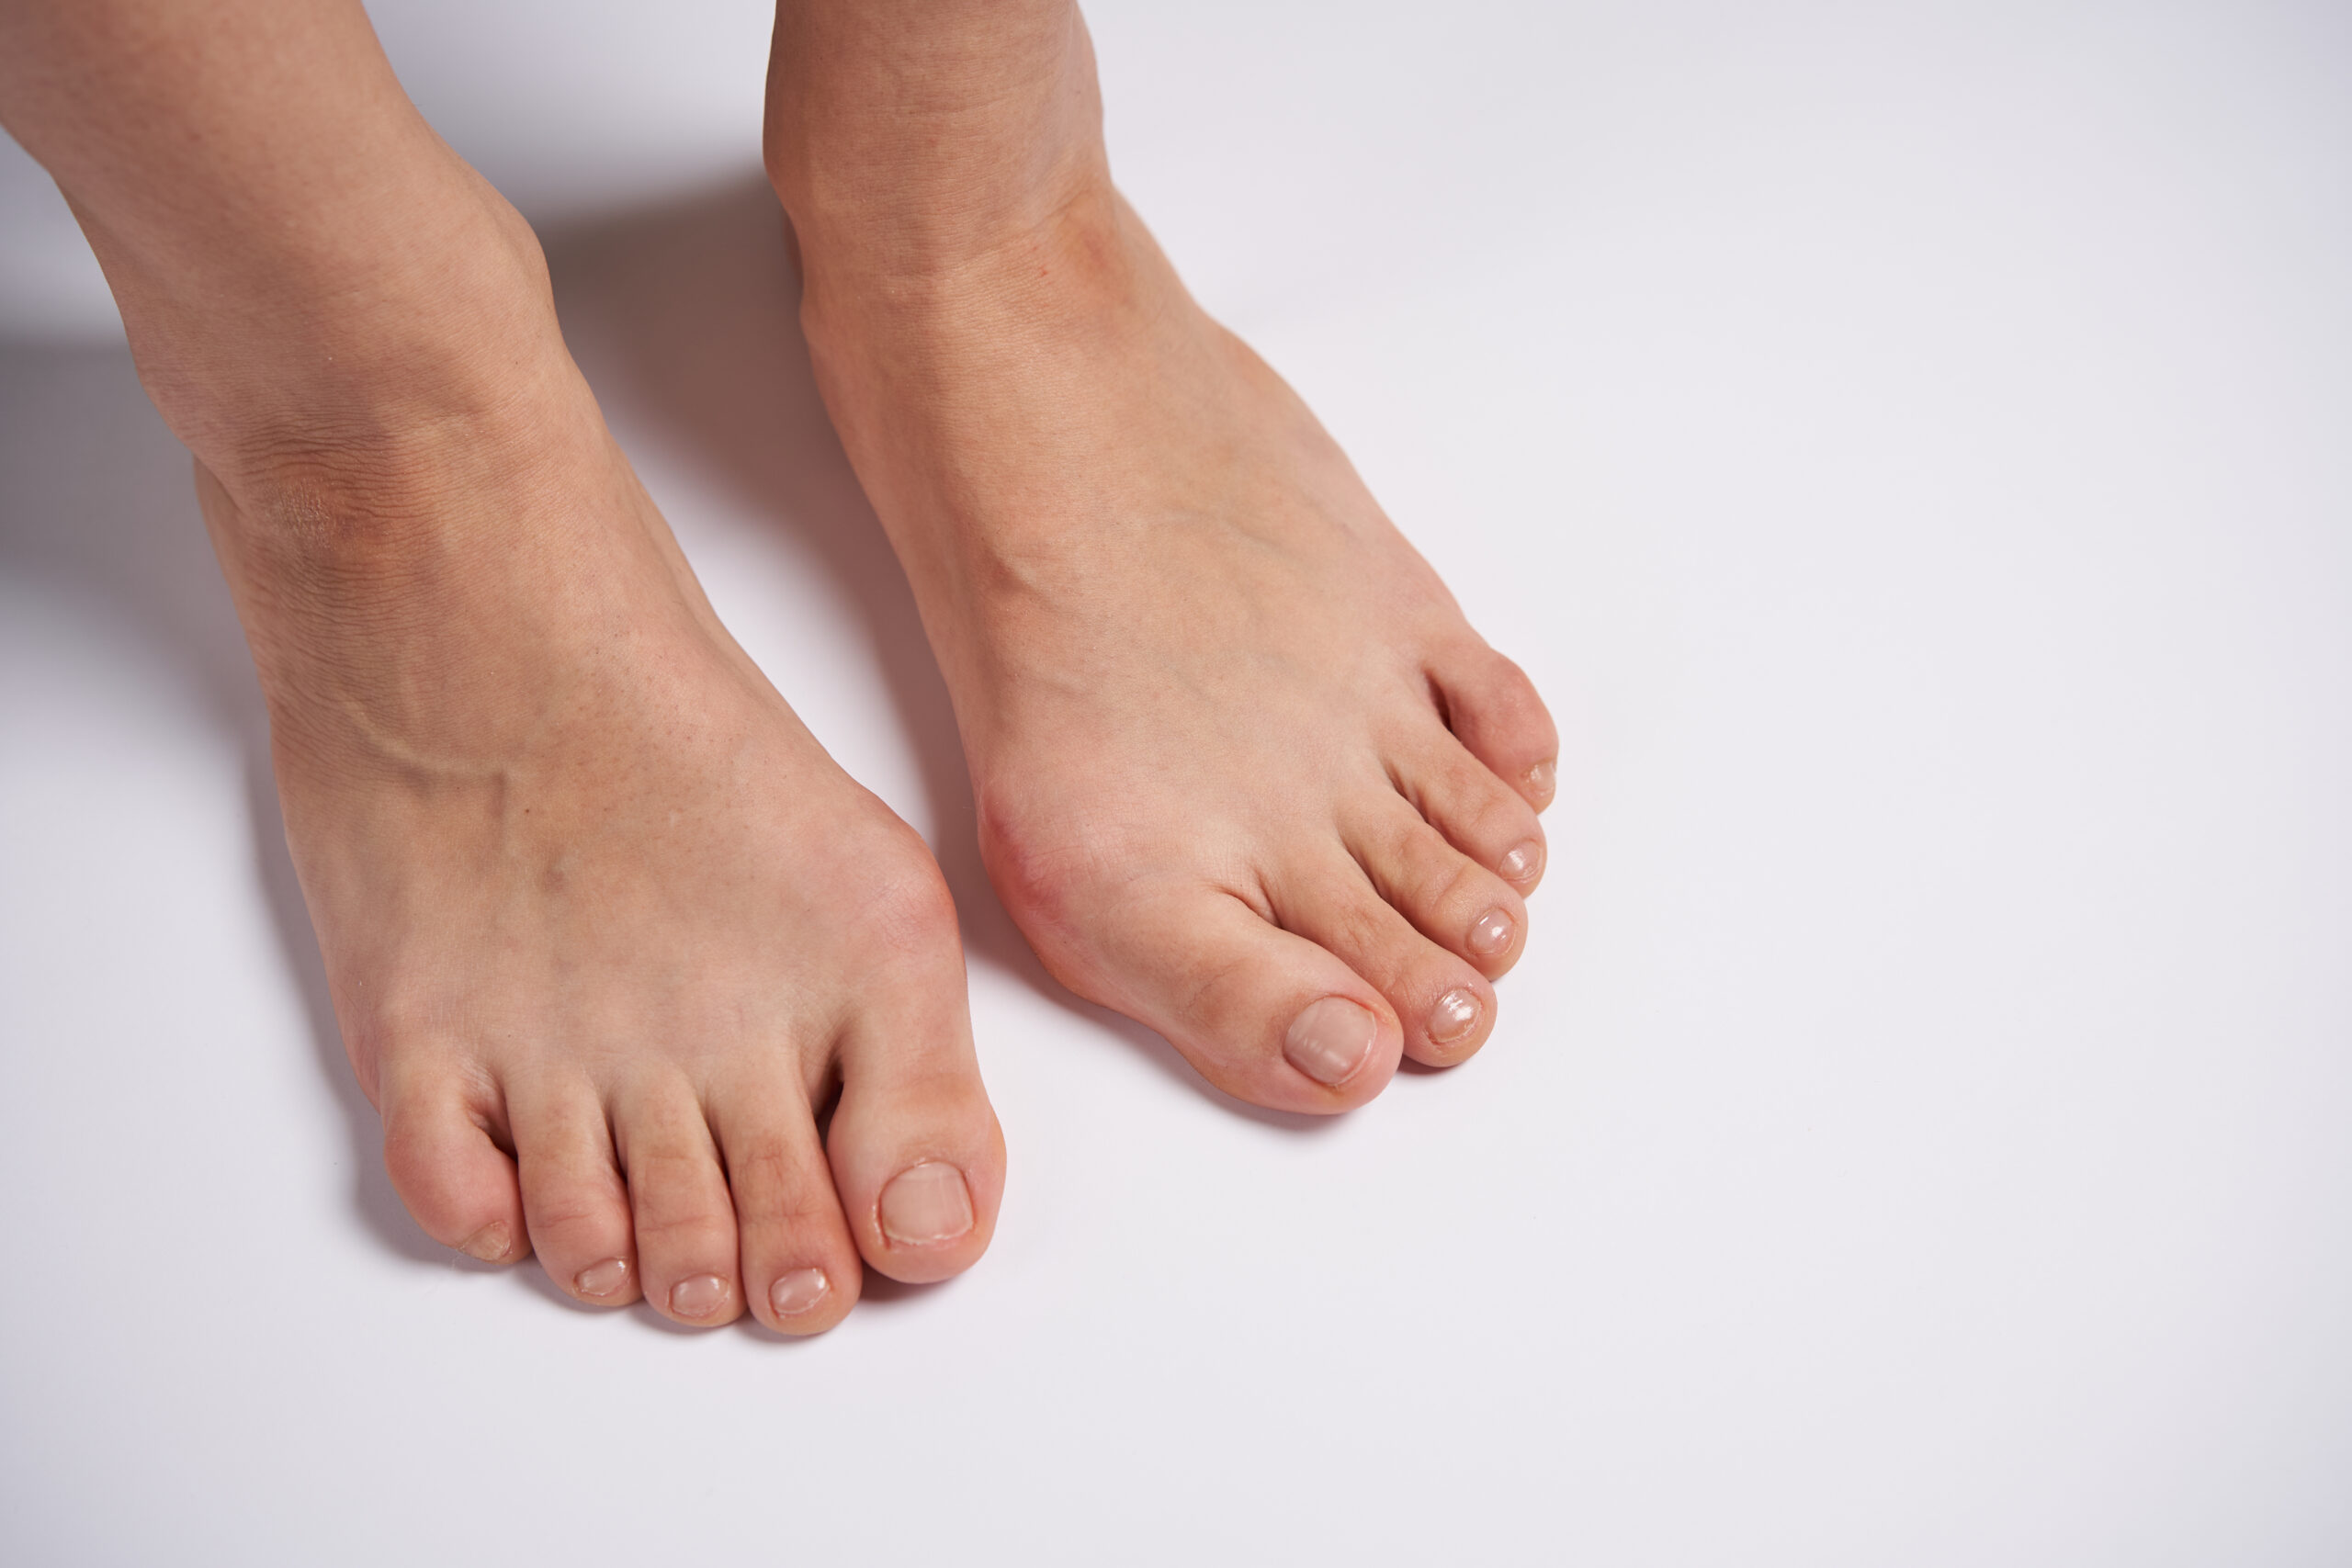 外反母趾の写真
足の悩みは何ですか？
NWPL社のファンクショナルオーソティックス®およびファンクショナルインソール
理学療法士の無料悩み相談"足のお悩み相談会"　外反母趾写真